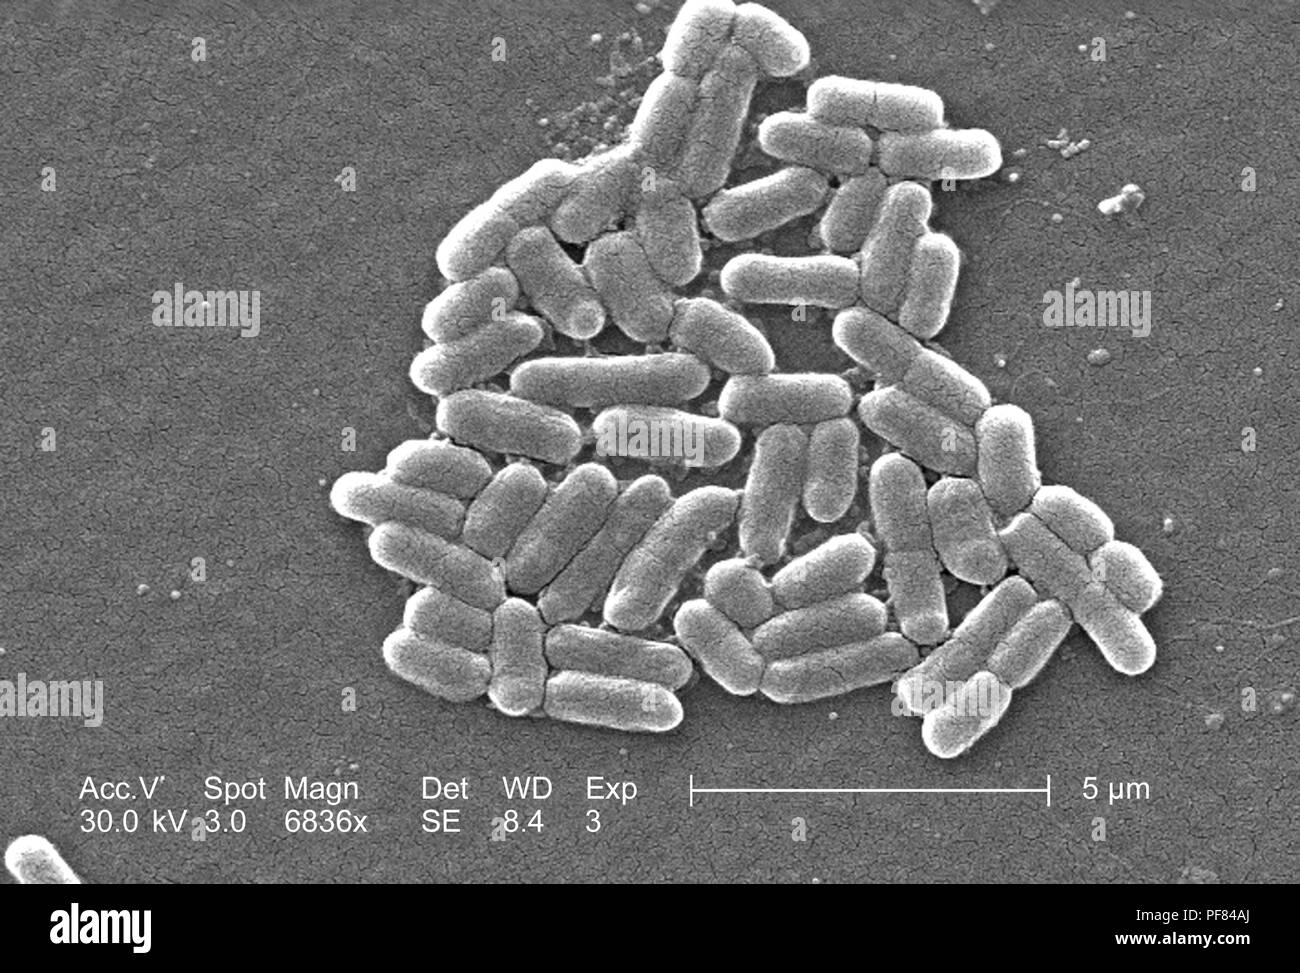 Nombre de bactéries Gram négatif bactéries Escherichia coli de la souche O157:H7, révélé dans le 6836x amplifiés en microscopie électronique à balayage (MEB) de droit, 2006. Image courtoisie Centres for Disease Control (CDC) / National Escherichia, Shigella, Vibrio Unité de référence à la CDC. () Banque D'Images